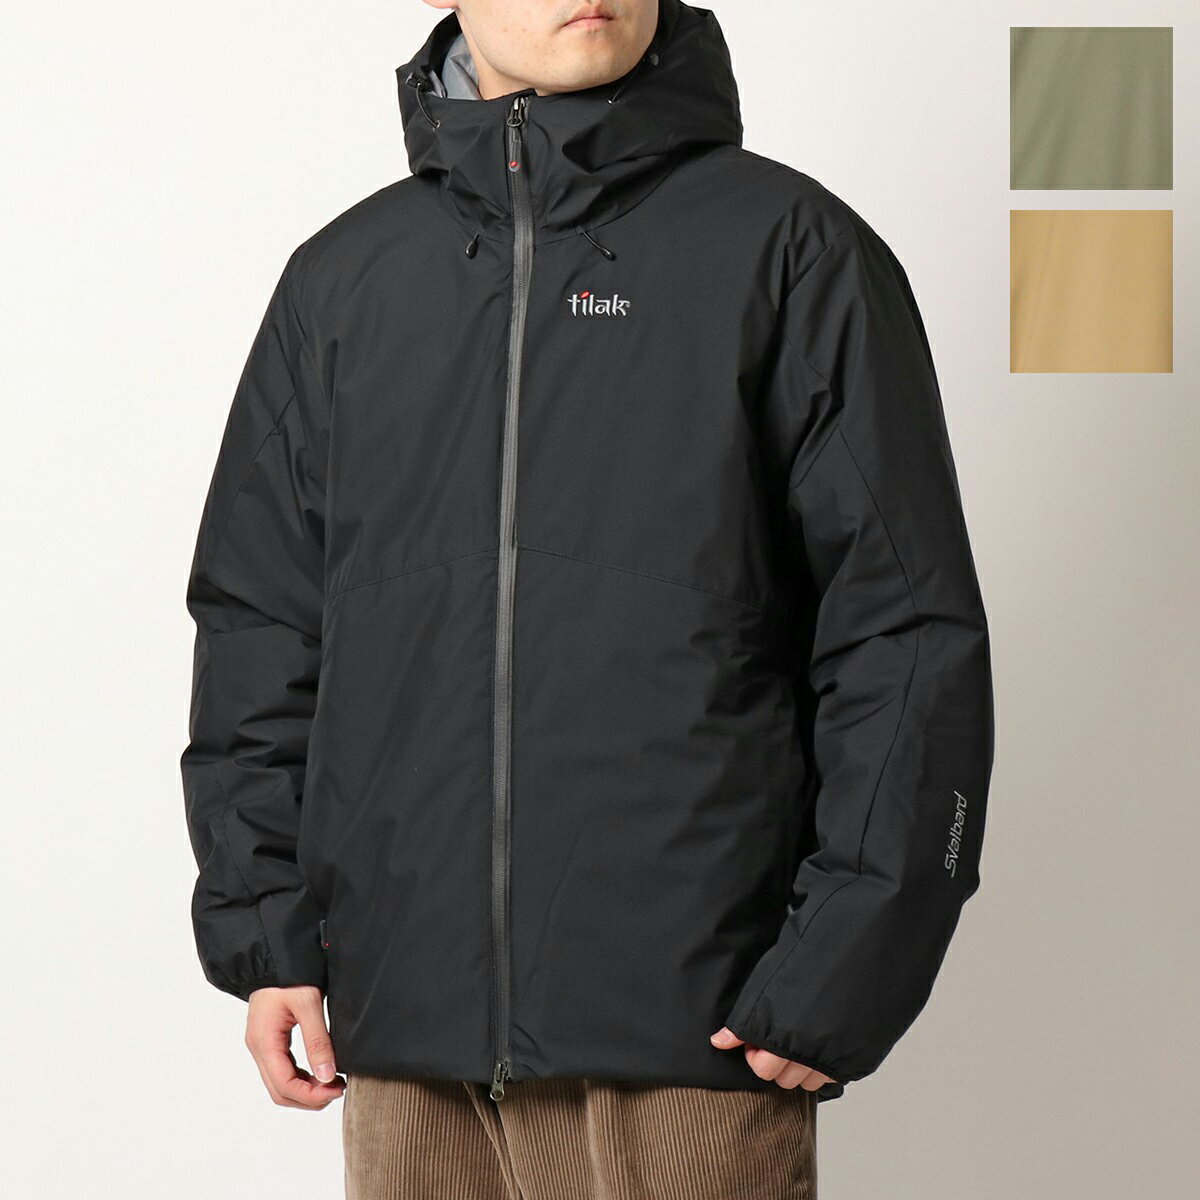 Tilak ティラック フーデッドジャケット Svalbard Jacket メンズ 中綿 GORE-TEX INFINIUM ナイロン ロゴ刺繍 ブルゾン パッカブル カラー3色